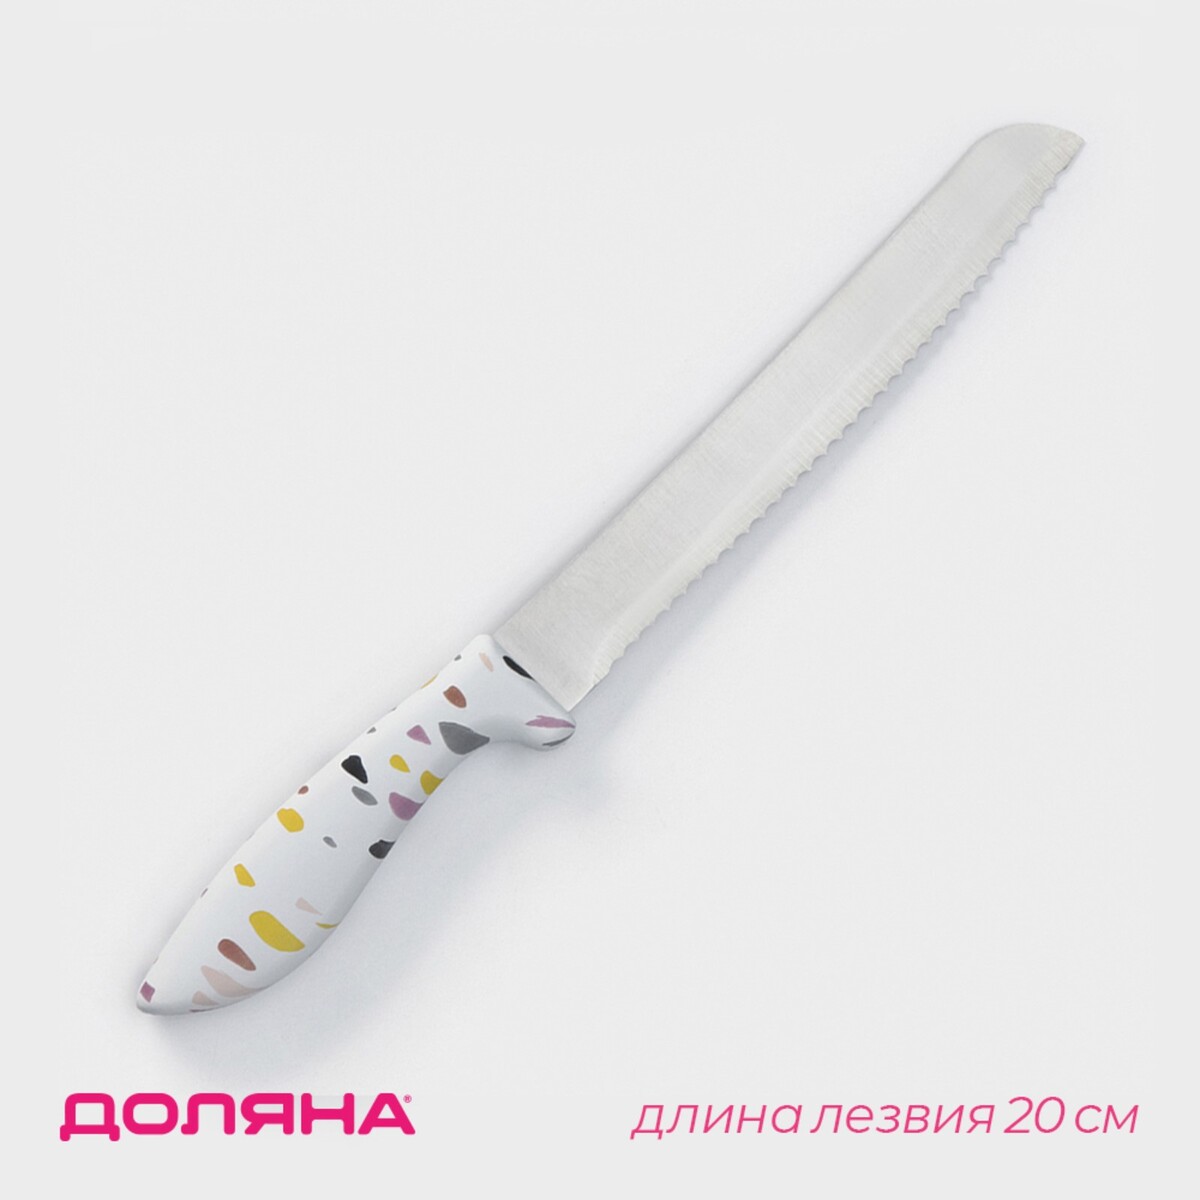 Нож для хлеба доляна sparkle, лезвие 20 см, цвет белый нож топорик кухонный доляна sparkle лезвие 20 см белый